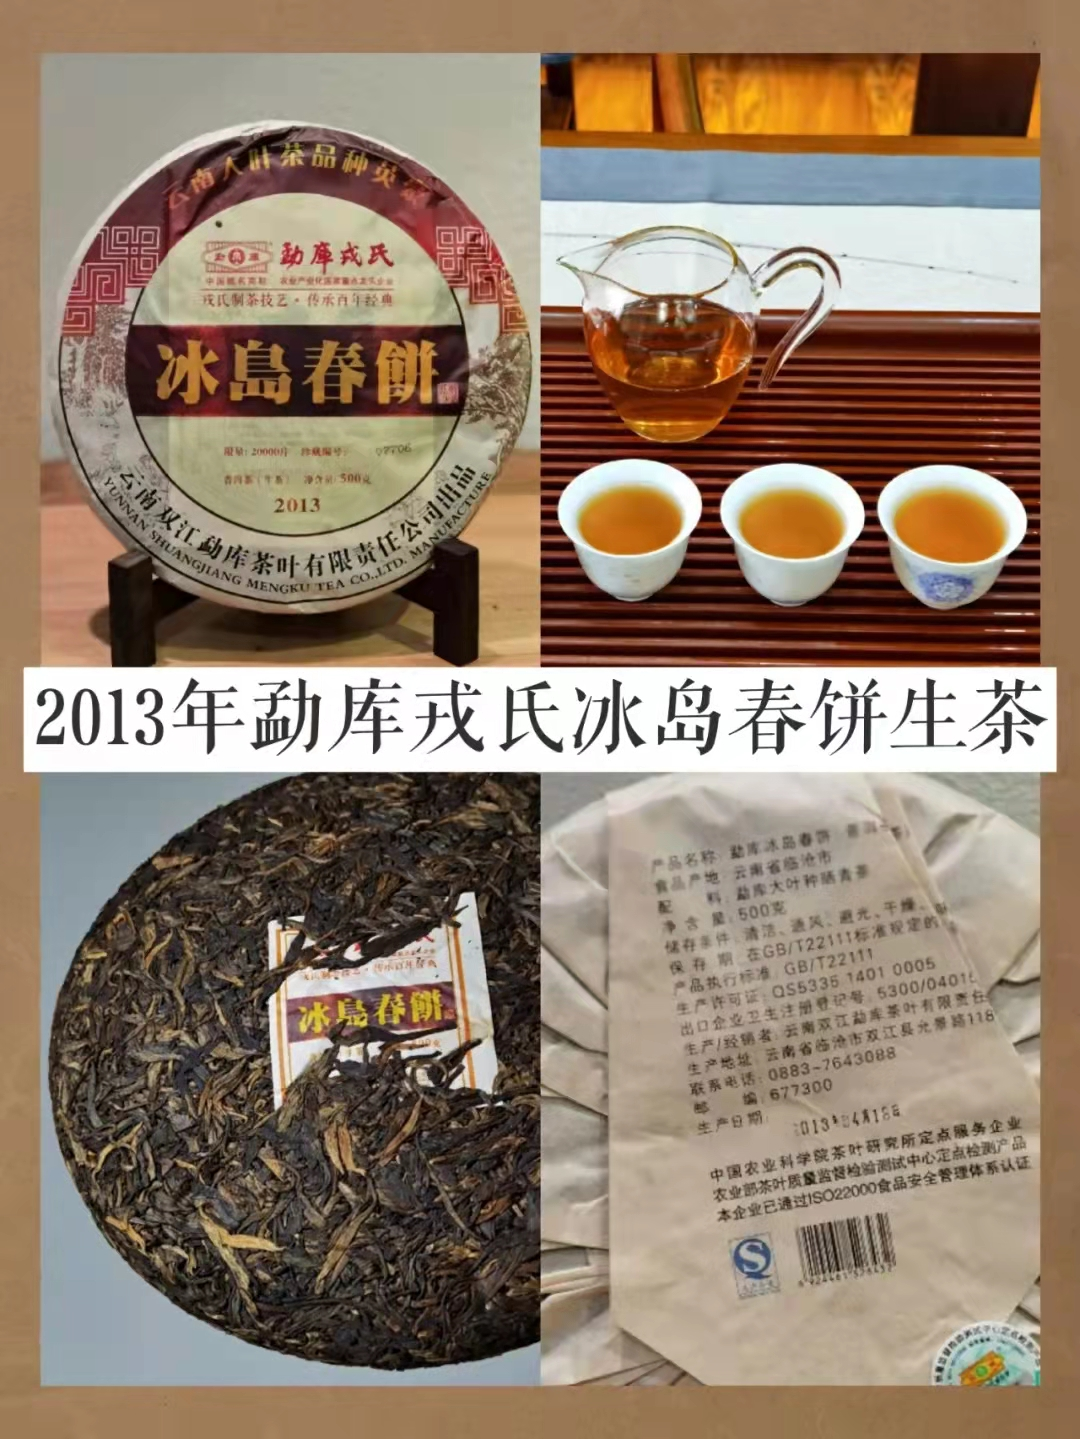 一斤毛茶2万元，茶树王采摘权高达166万元，冰岛茶凭啥这么贵？